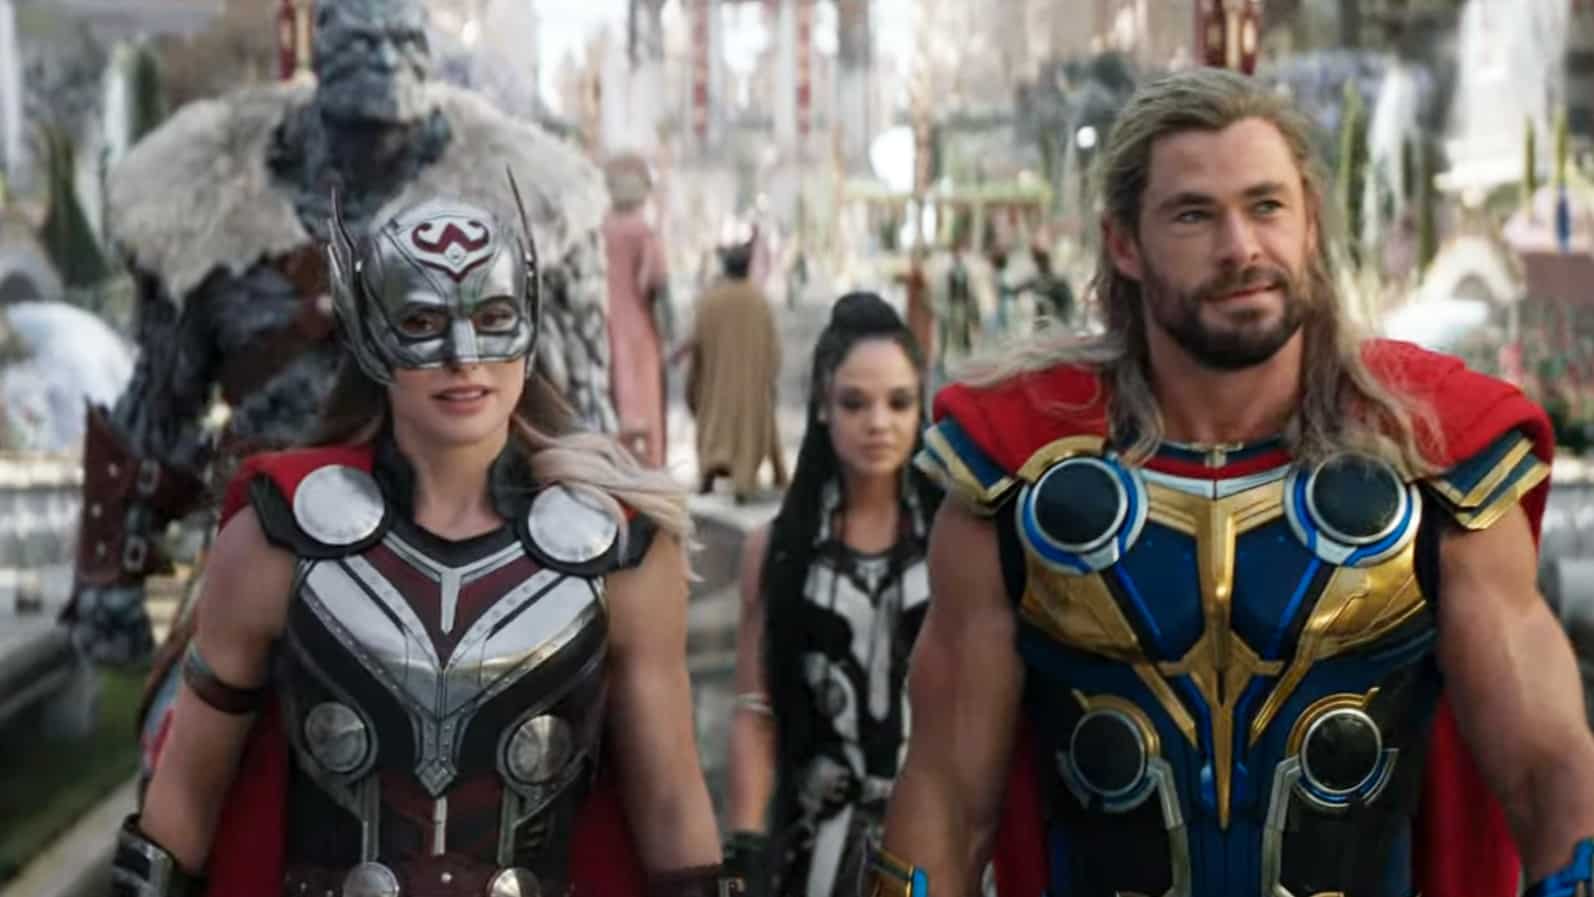 Thor: Love and Thunder - Official Deleted Scene  Chris Hemsworth, Chris  Pratt, Pom Klementieff 